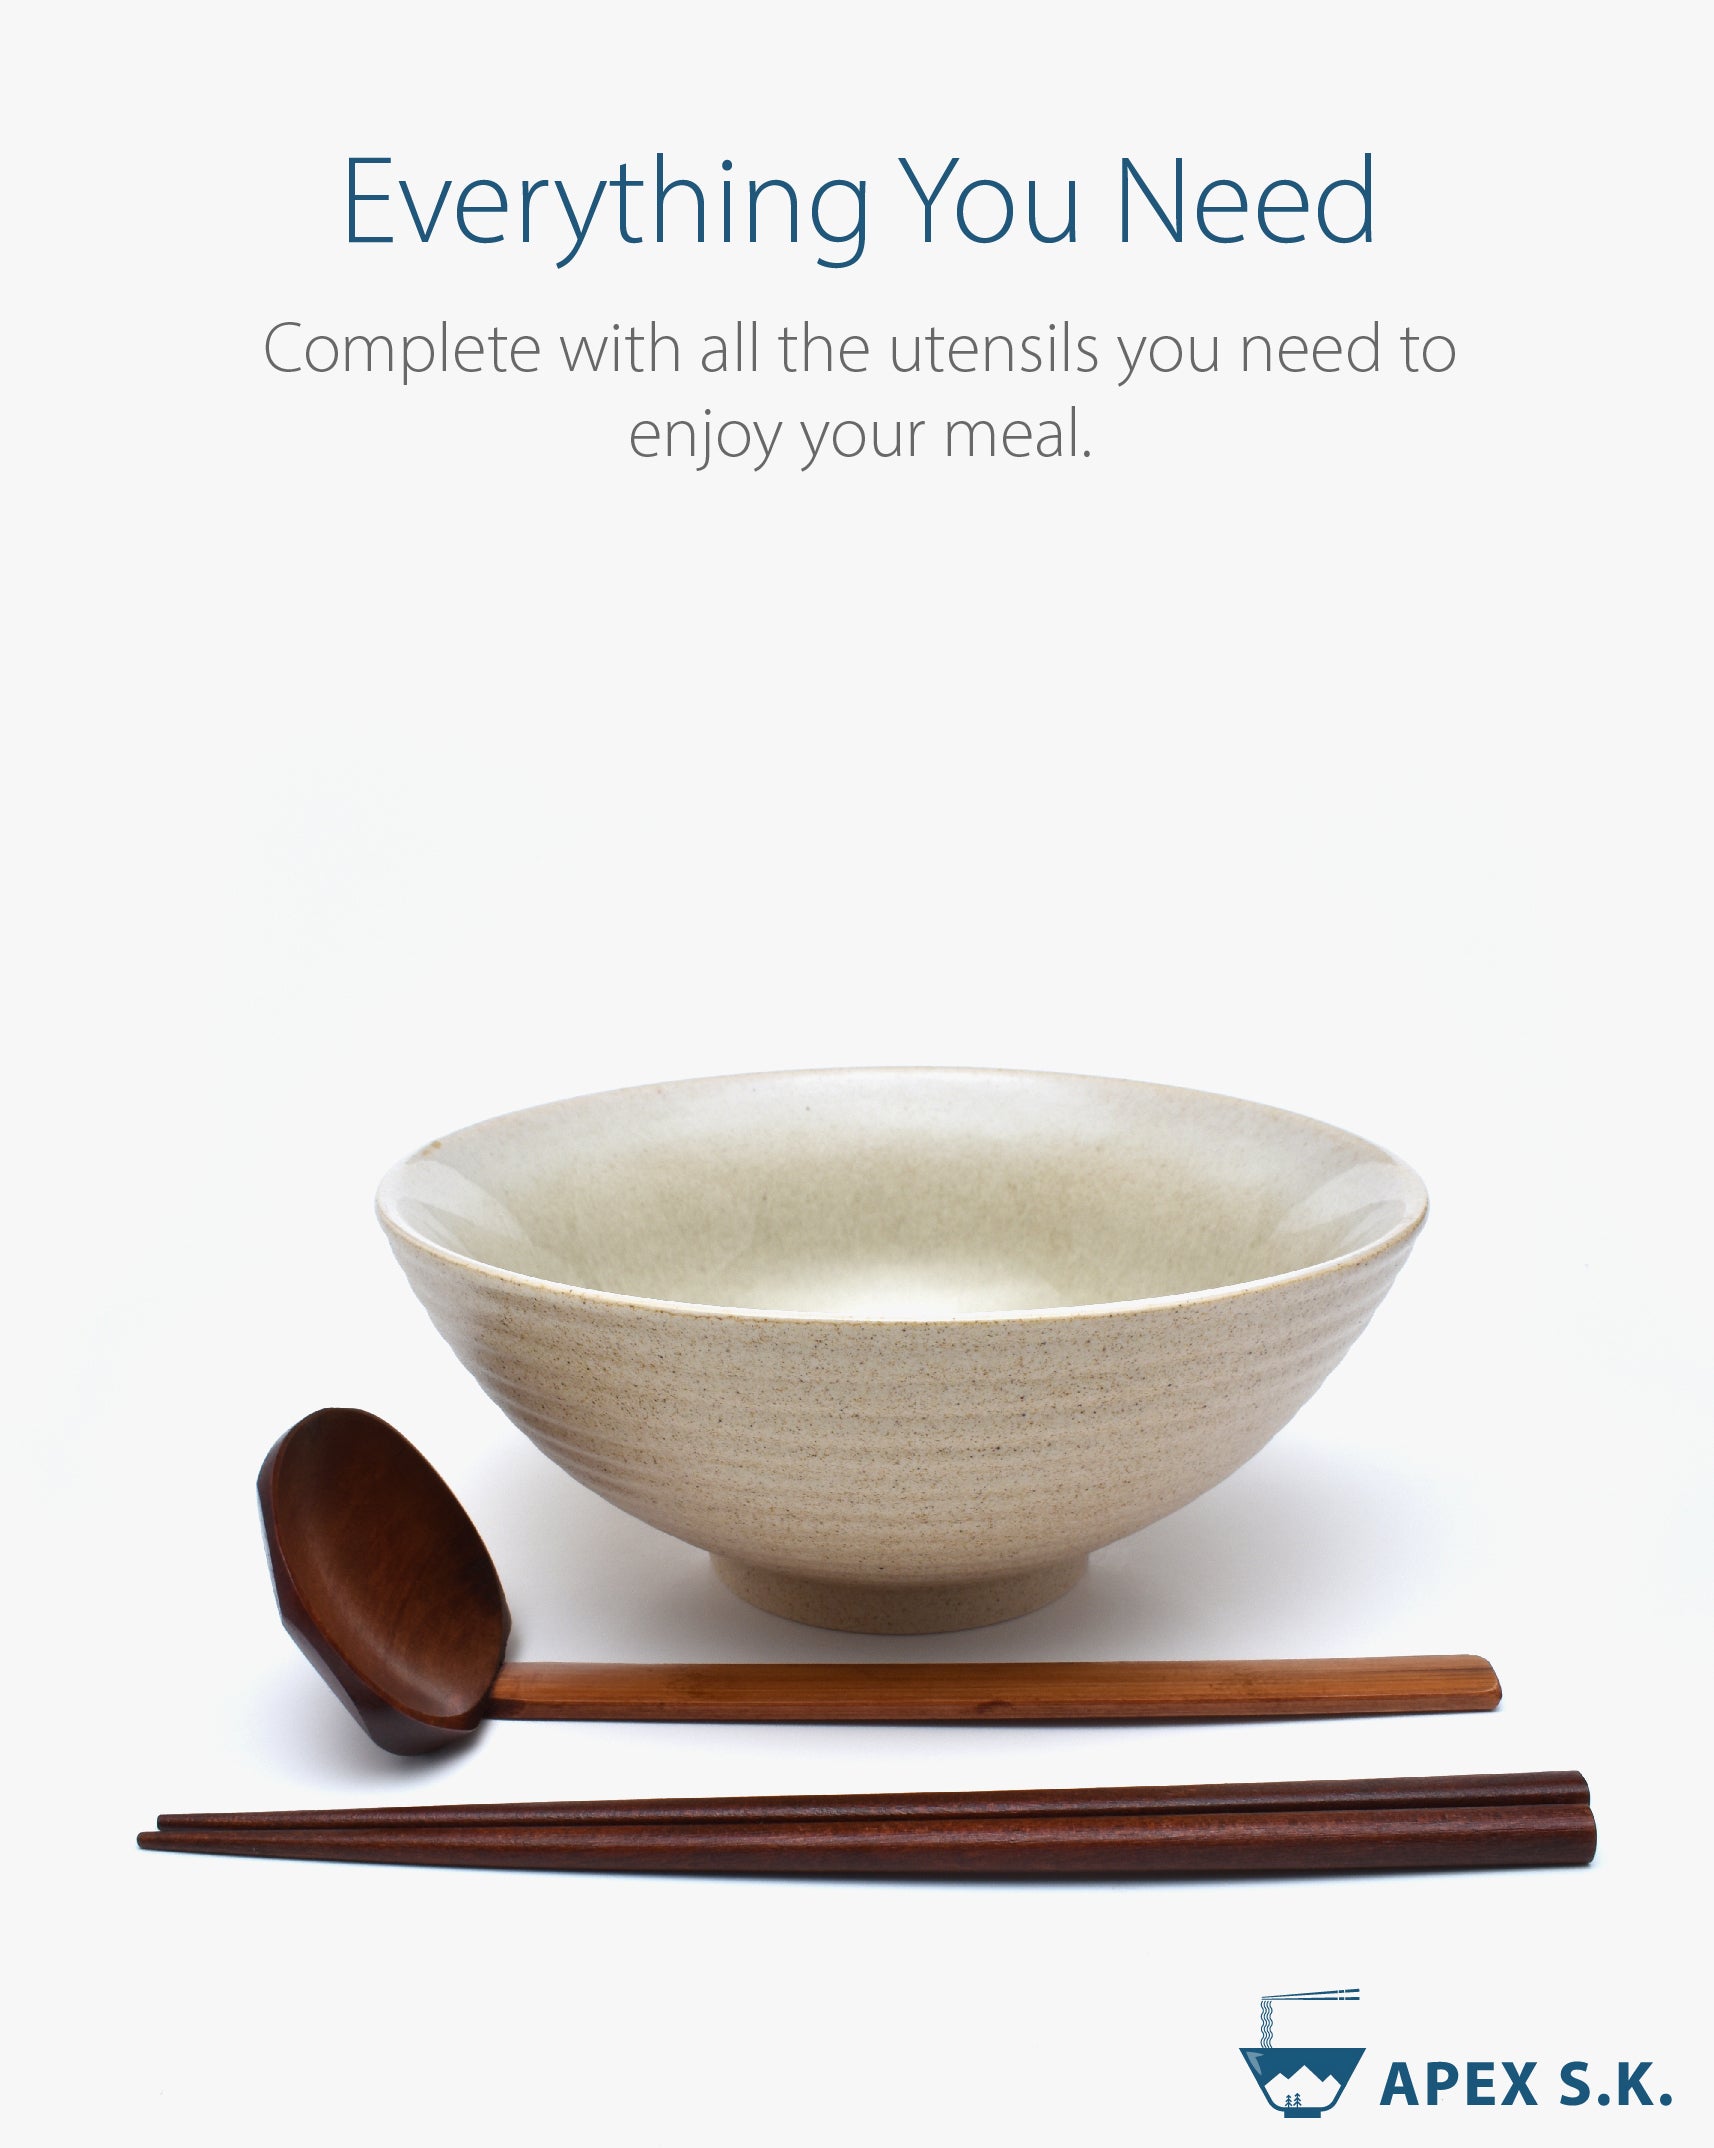 Ceramic 7.9" Japanese Ramen Bowls (Gradient Beige)